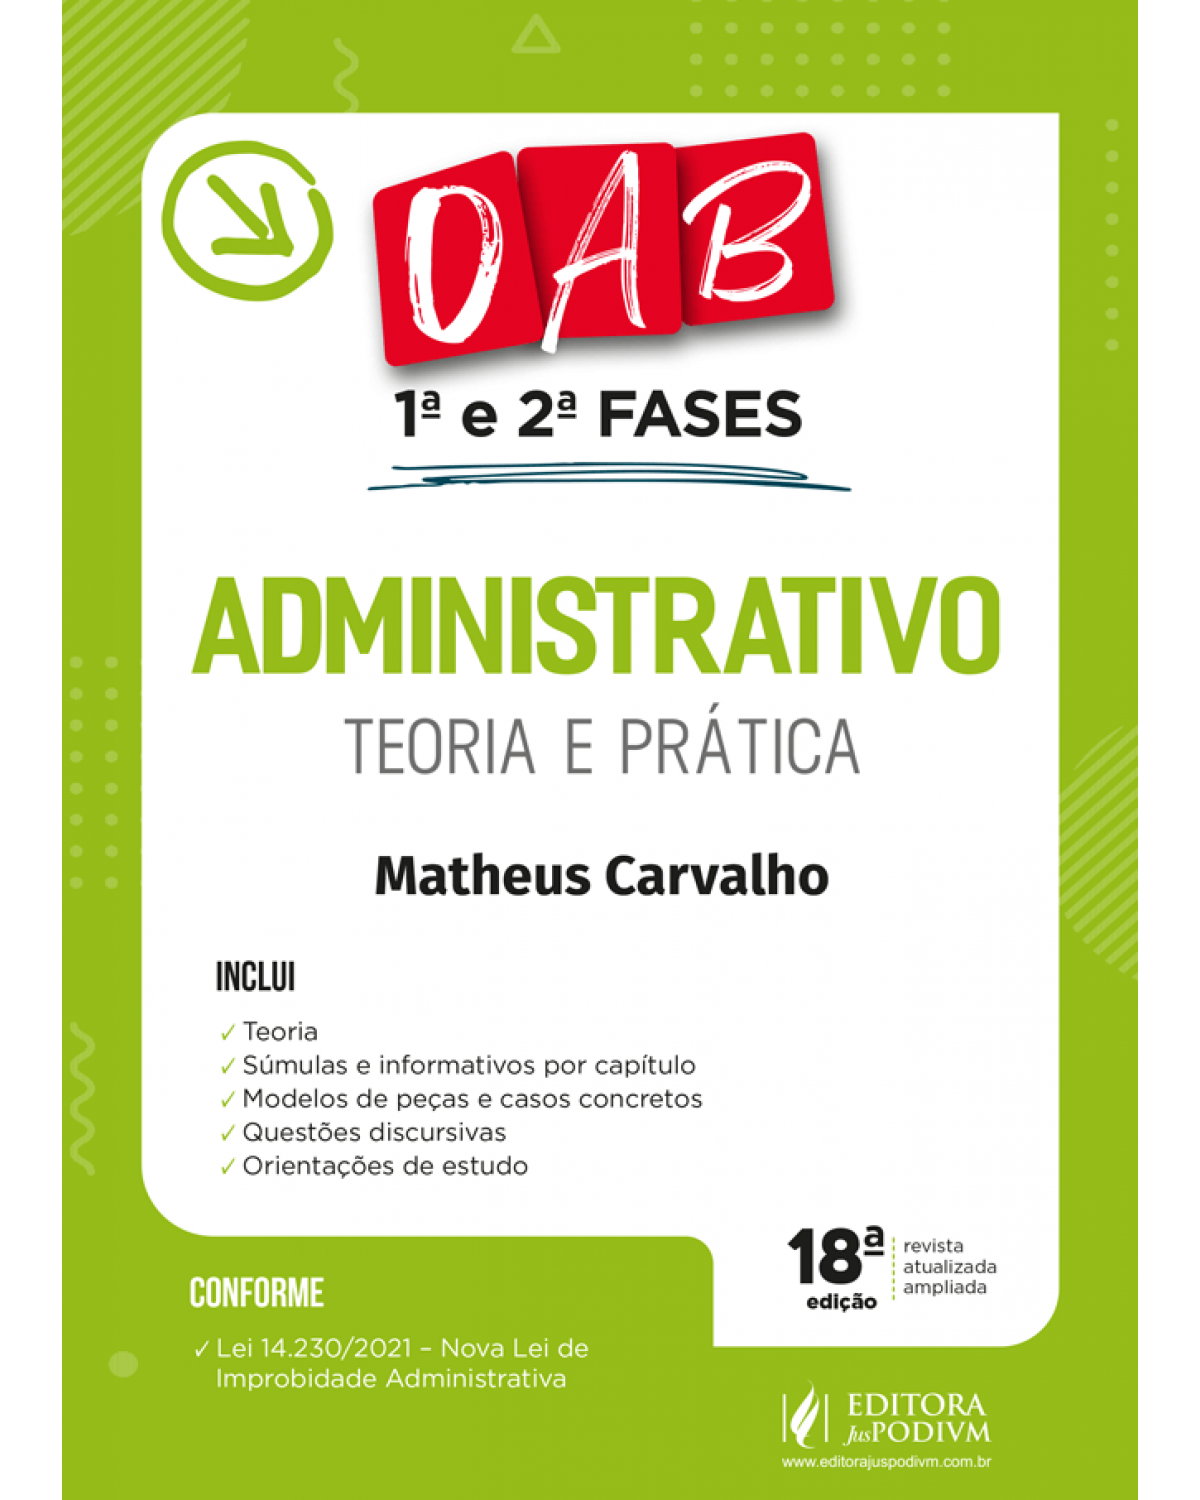 Administrativo: Teoria e prática - OAB 1ª e 2ª fases - 18ª Edição | 2022